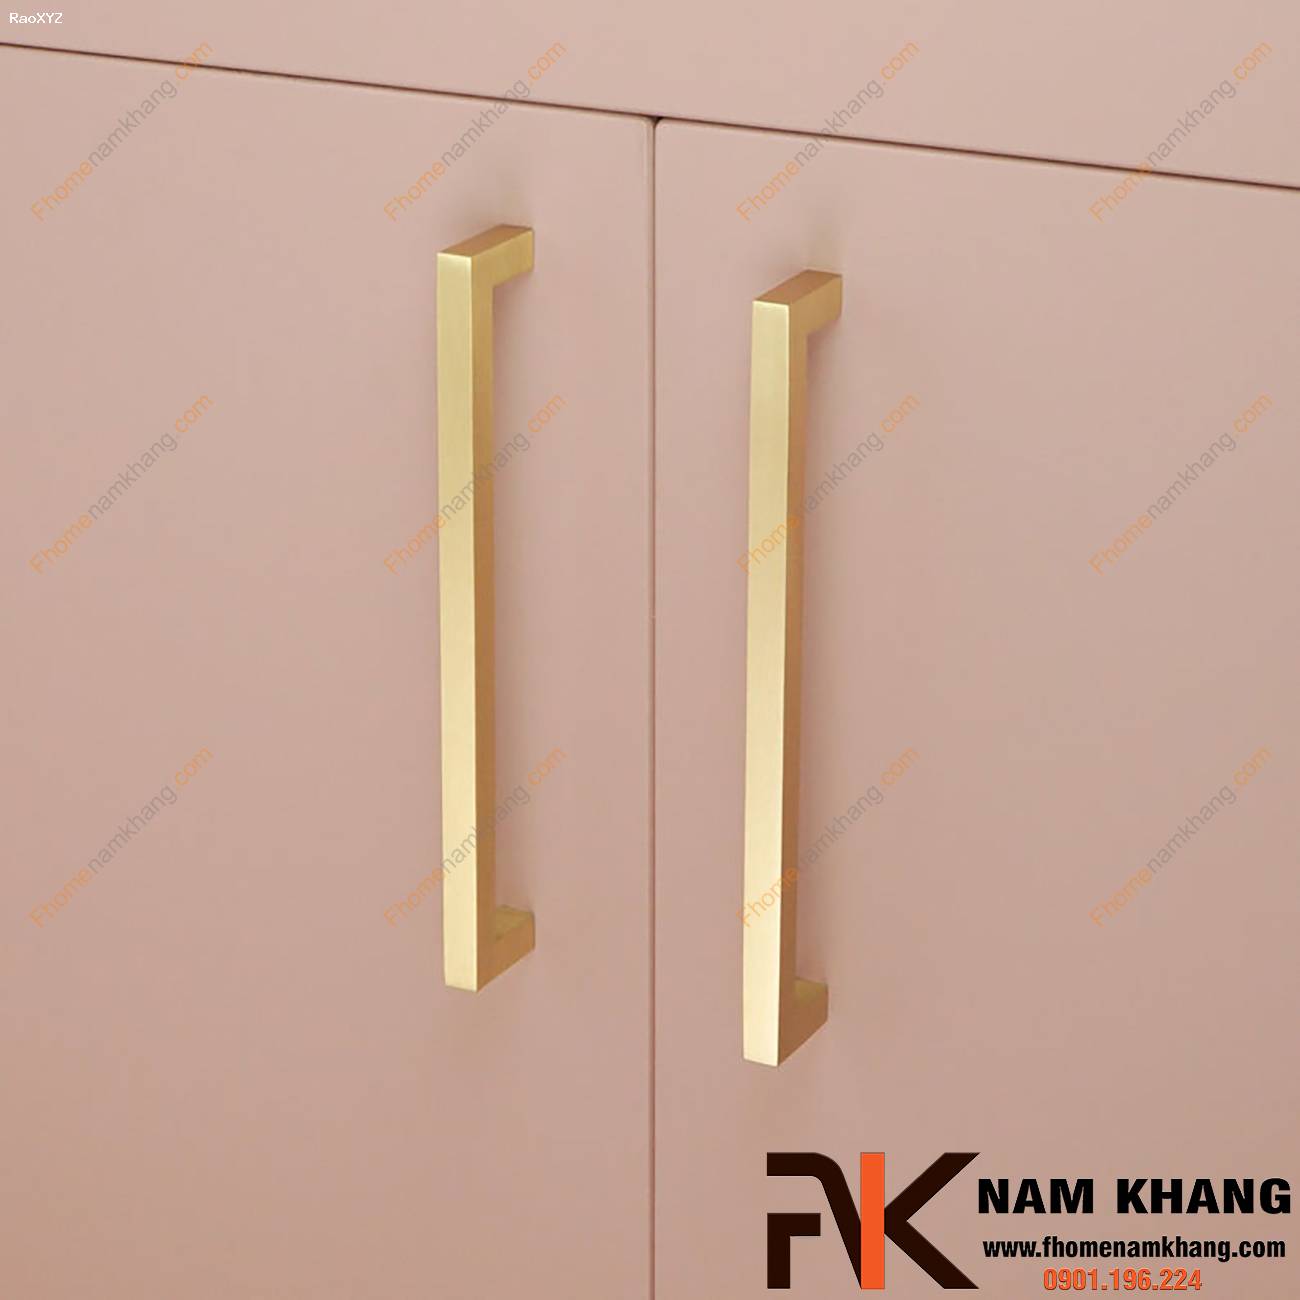 Tay nắm tủ cao cấp dạng thanh vuông NK423 | F-Home NamKhang